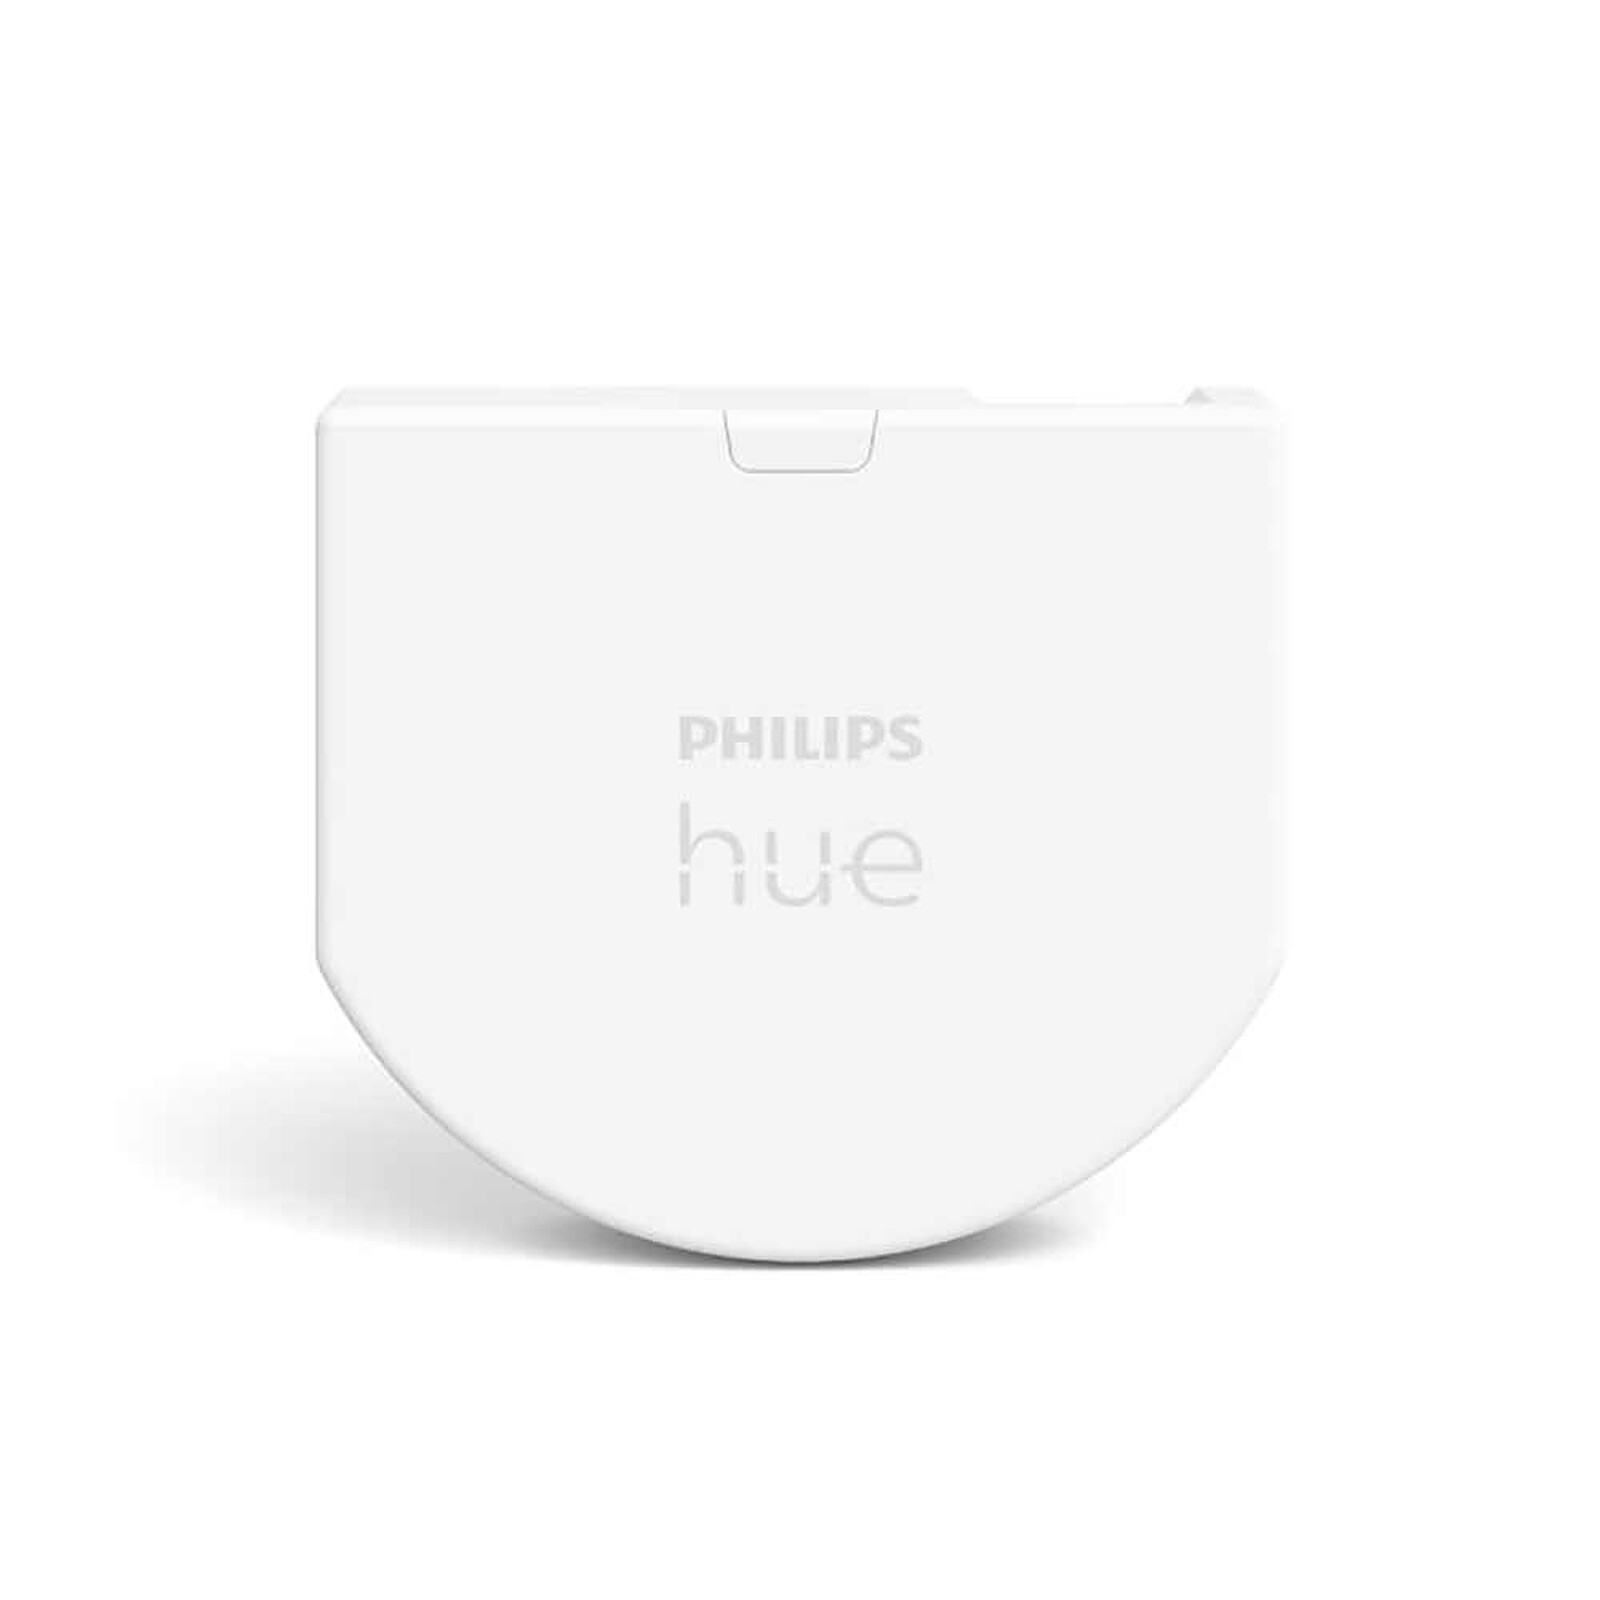 Philips Hue bouton télécommande Tap Dial Switch, noir, permet le